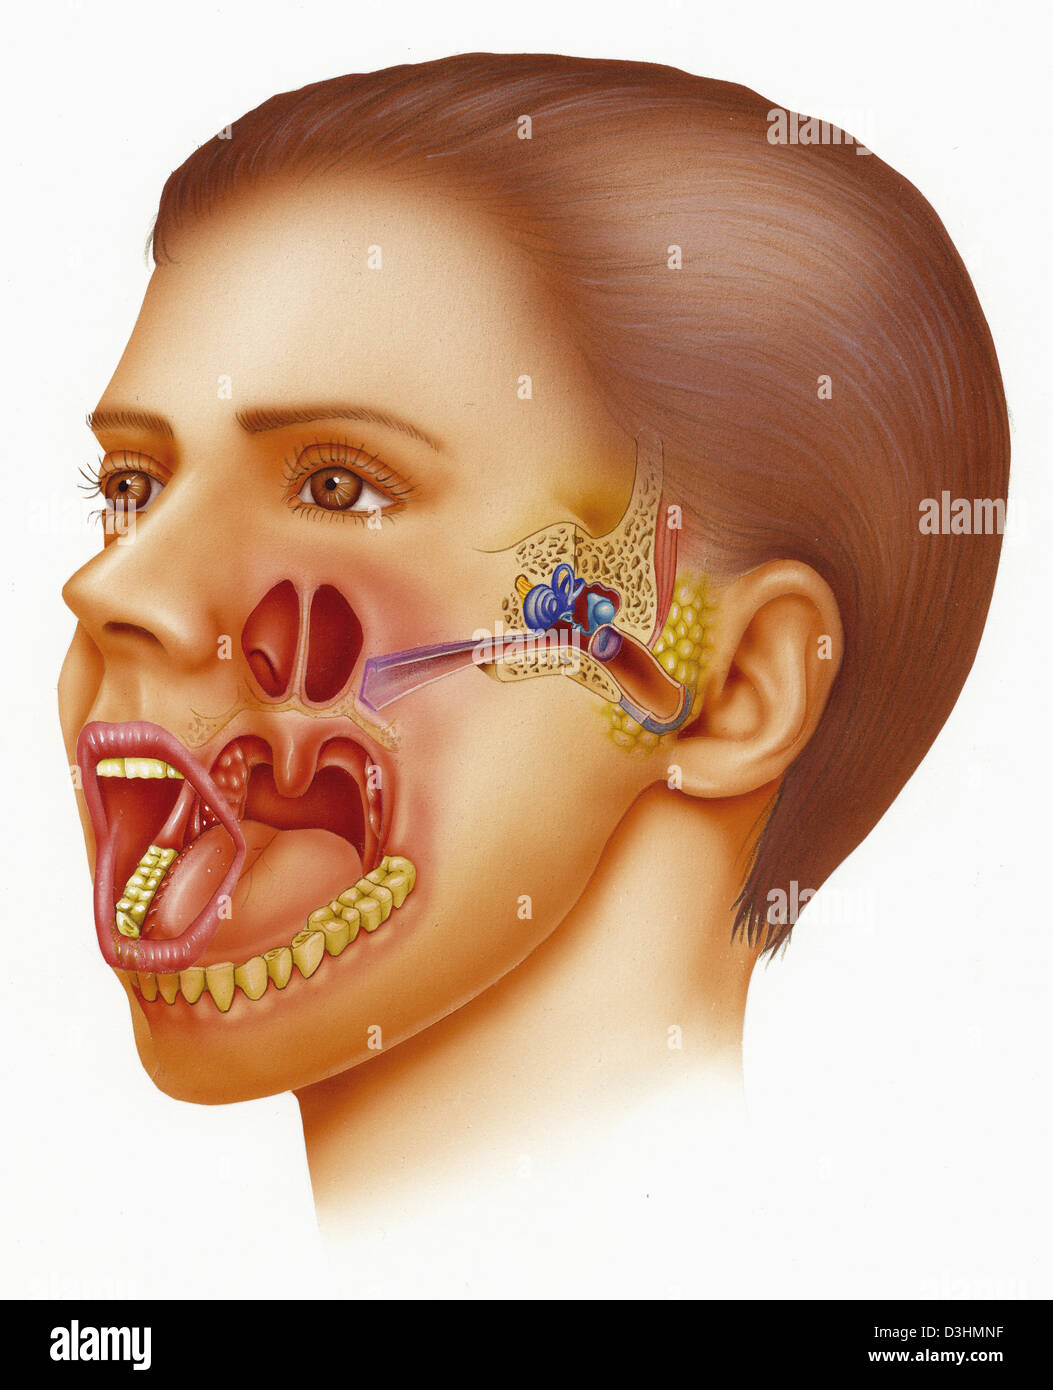 Между носом и ртом. ЛОР органы анатомия евстахиева труба.